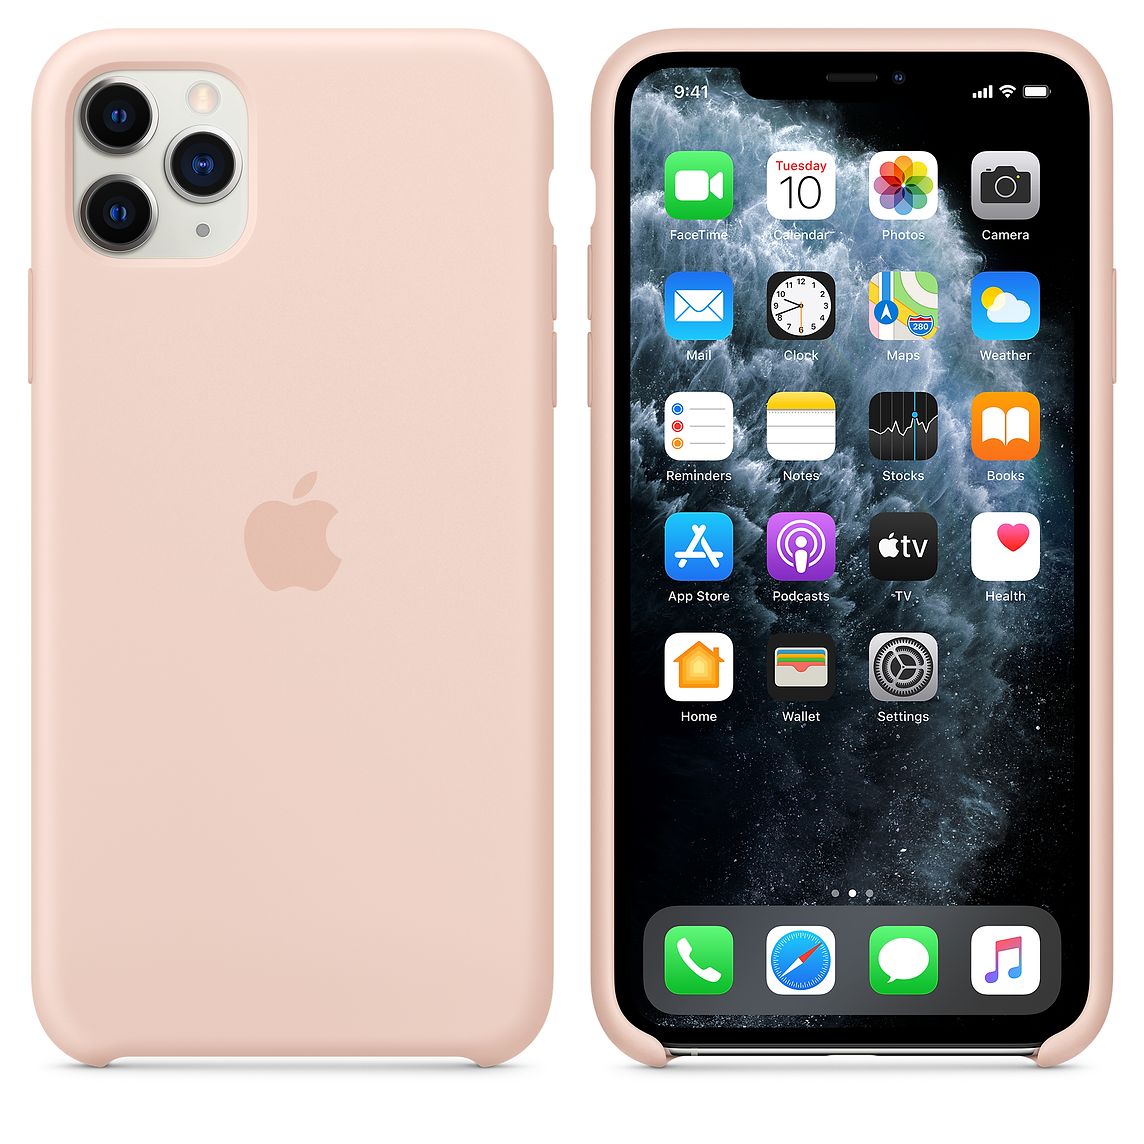 Фото — Чехол для смартфона Apple для iPhone 11 Pro Max, силикон, «розовый песок»